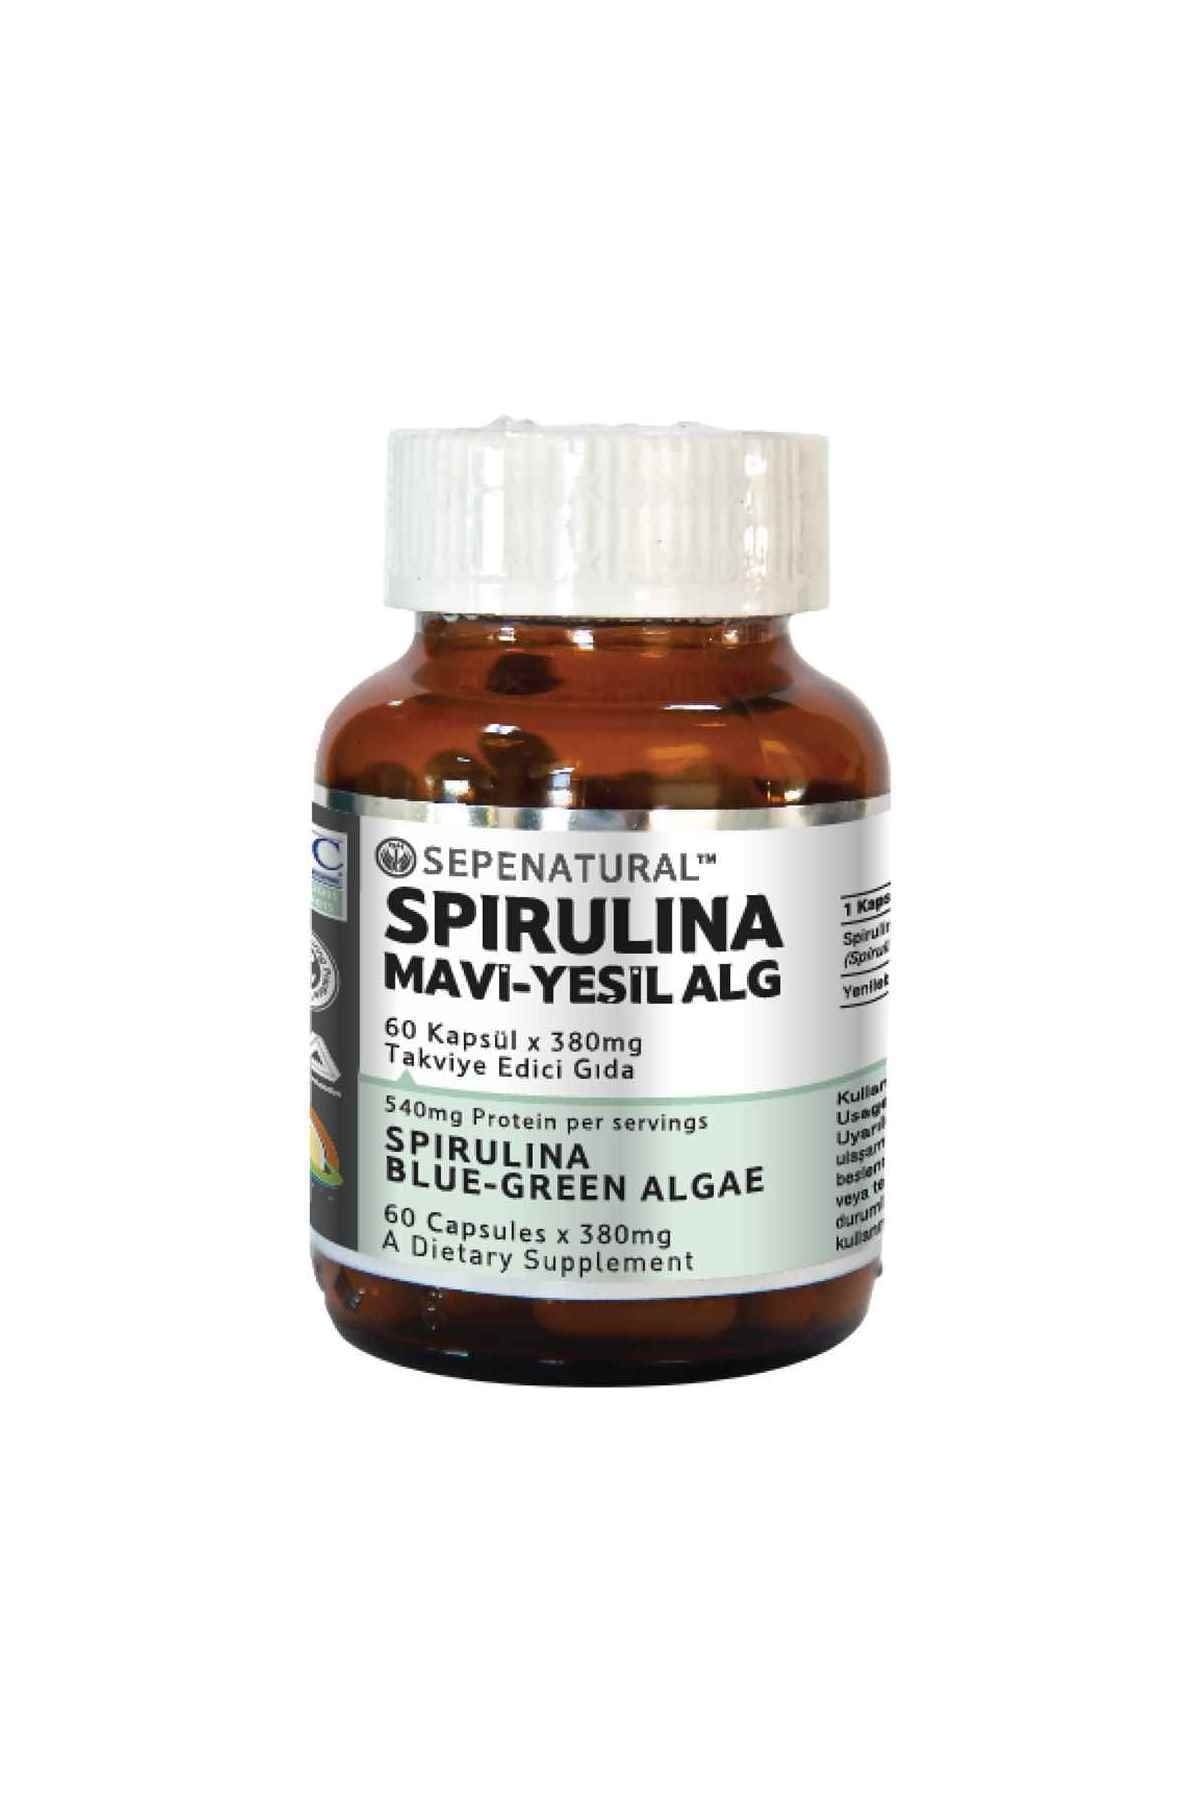 Sepe Natural Spirulina 60 Kapsül Siprulina Yosun Hapı